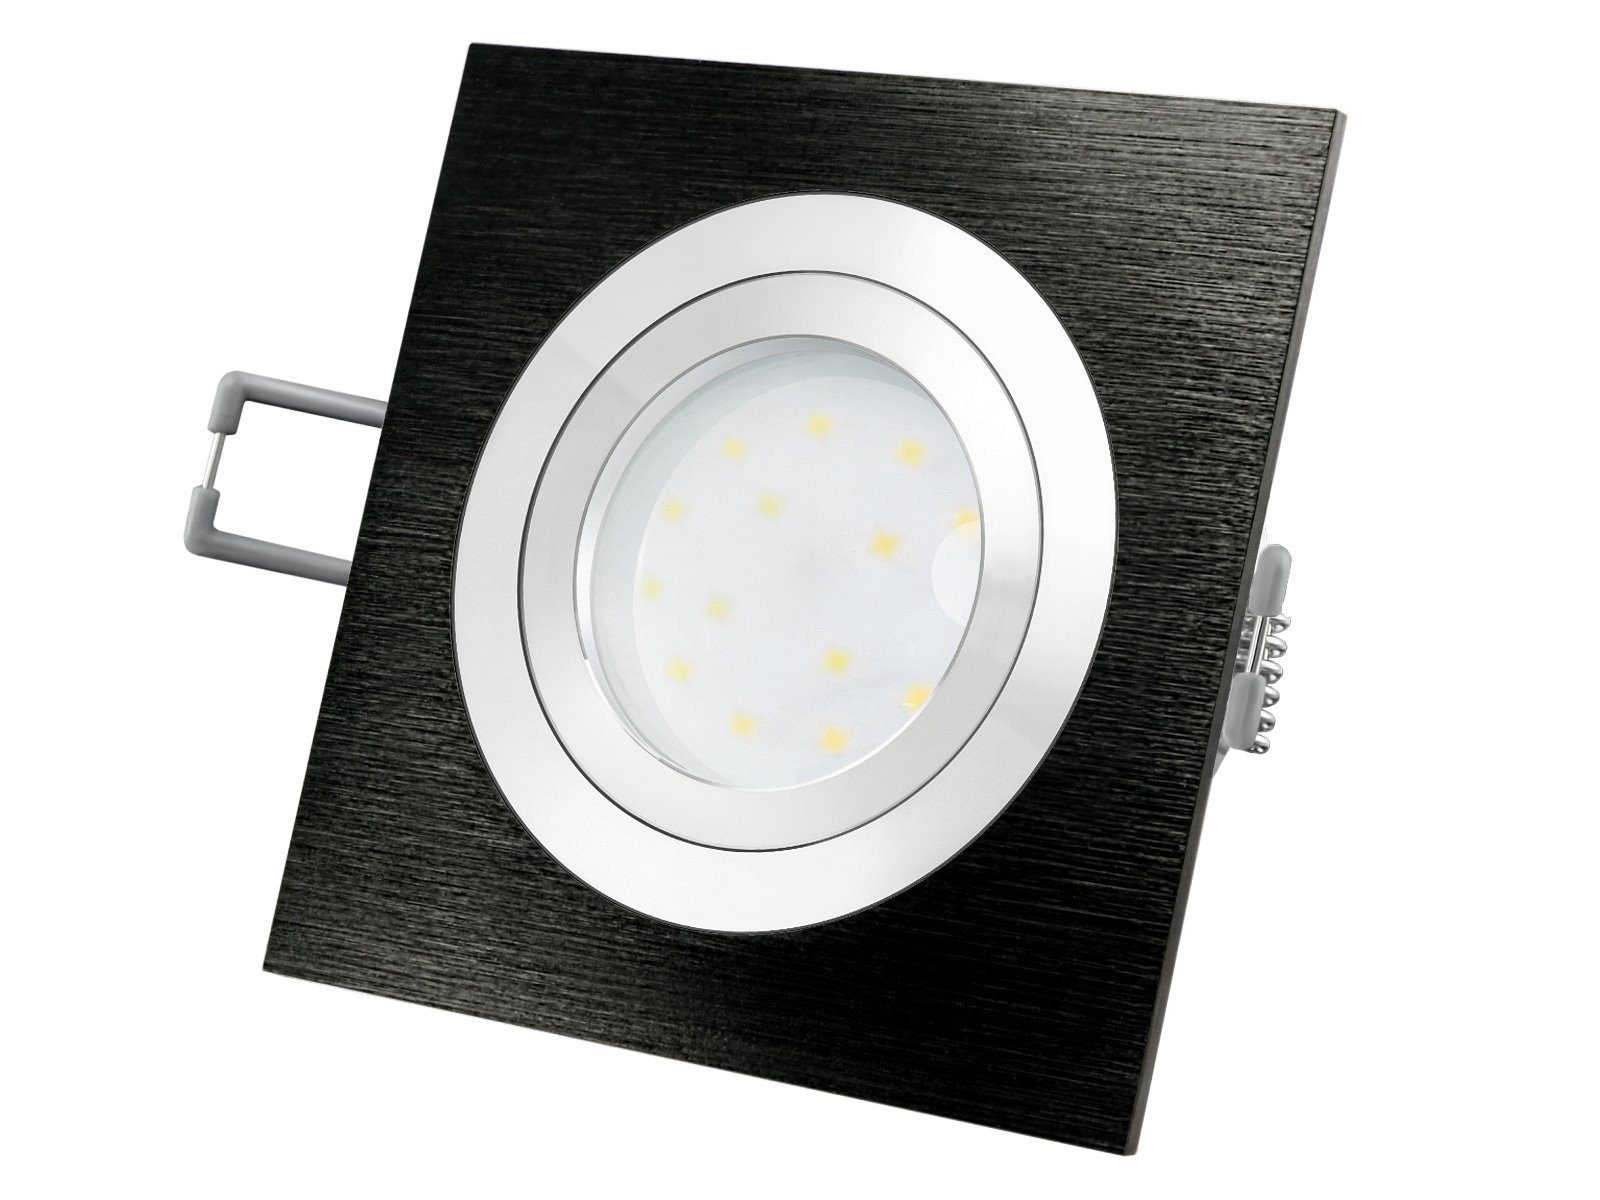 SSC-LUXon LED Einbaustrahler QF-2 LED-Einbauleuchte mit Alu schwenkbar flach schwarz Warmweiß LED-Modul